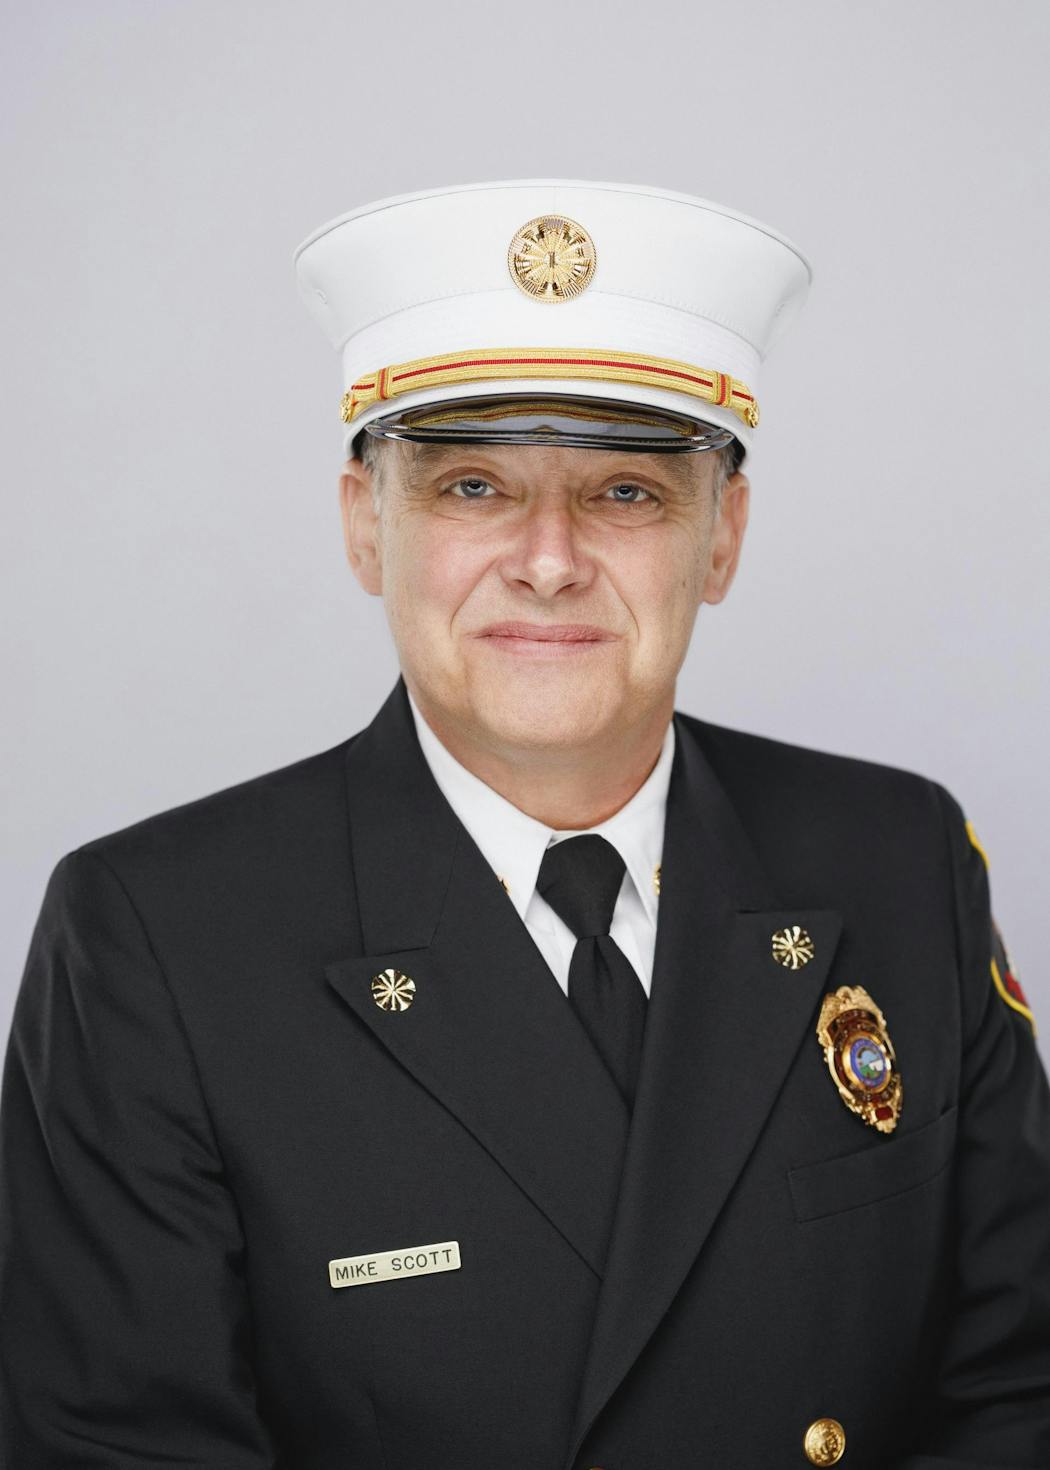 Shakopee interim Fire Chief Mike Scott